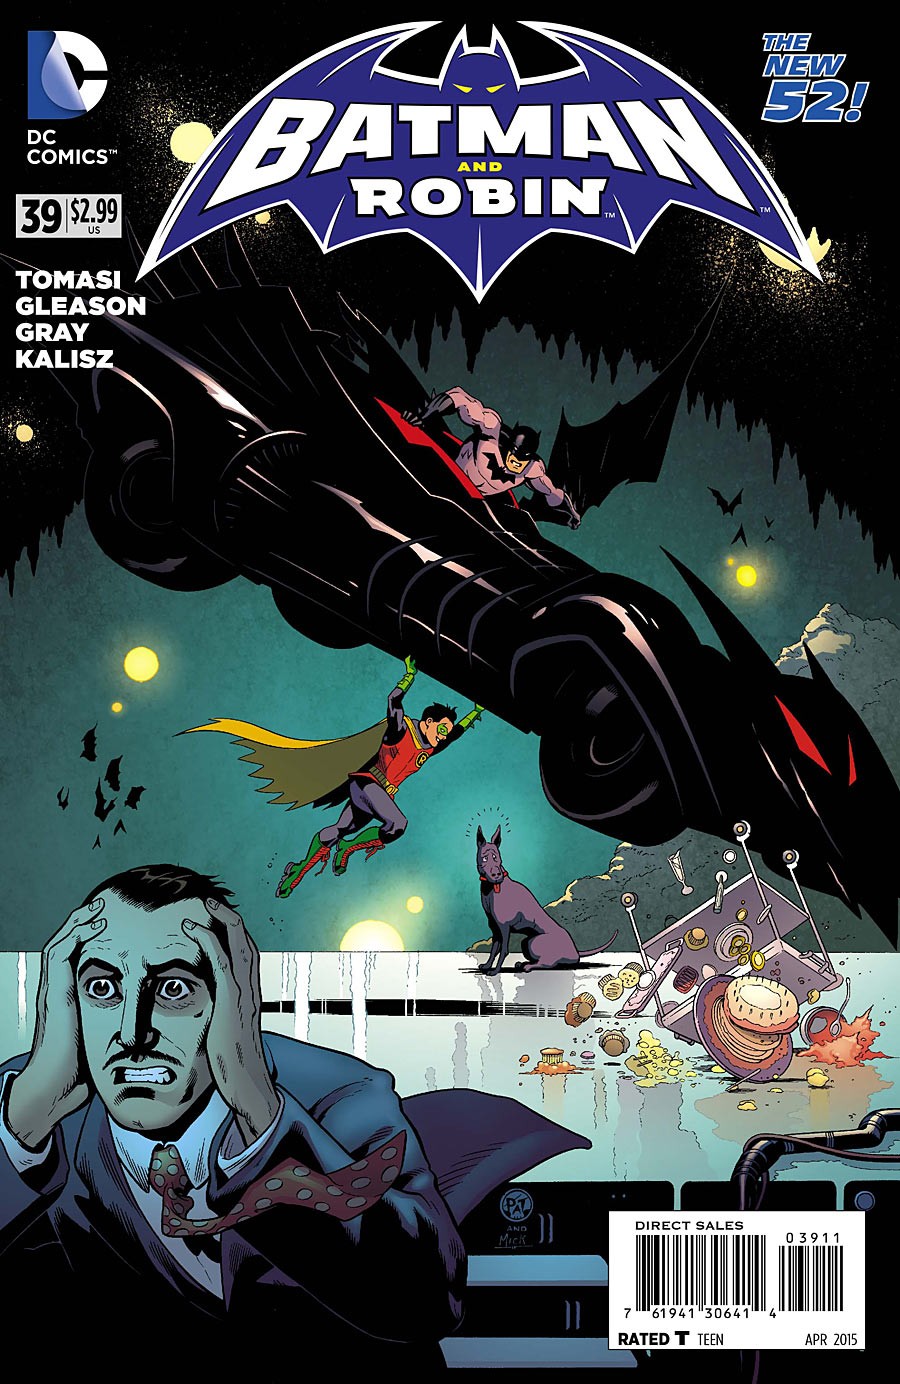 Batman and Robin Vol. 2 #39